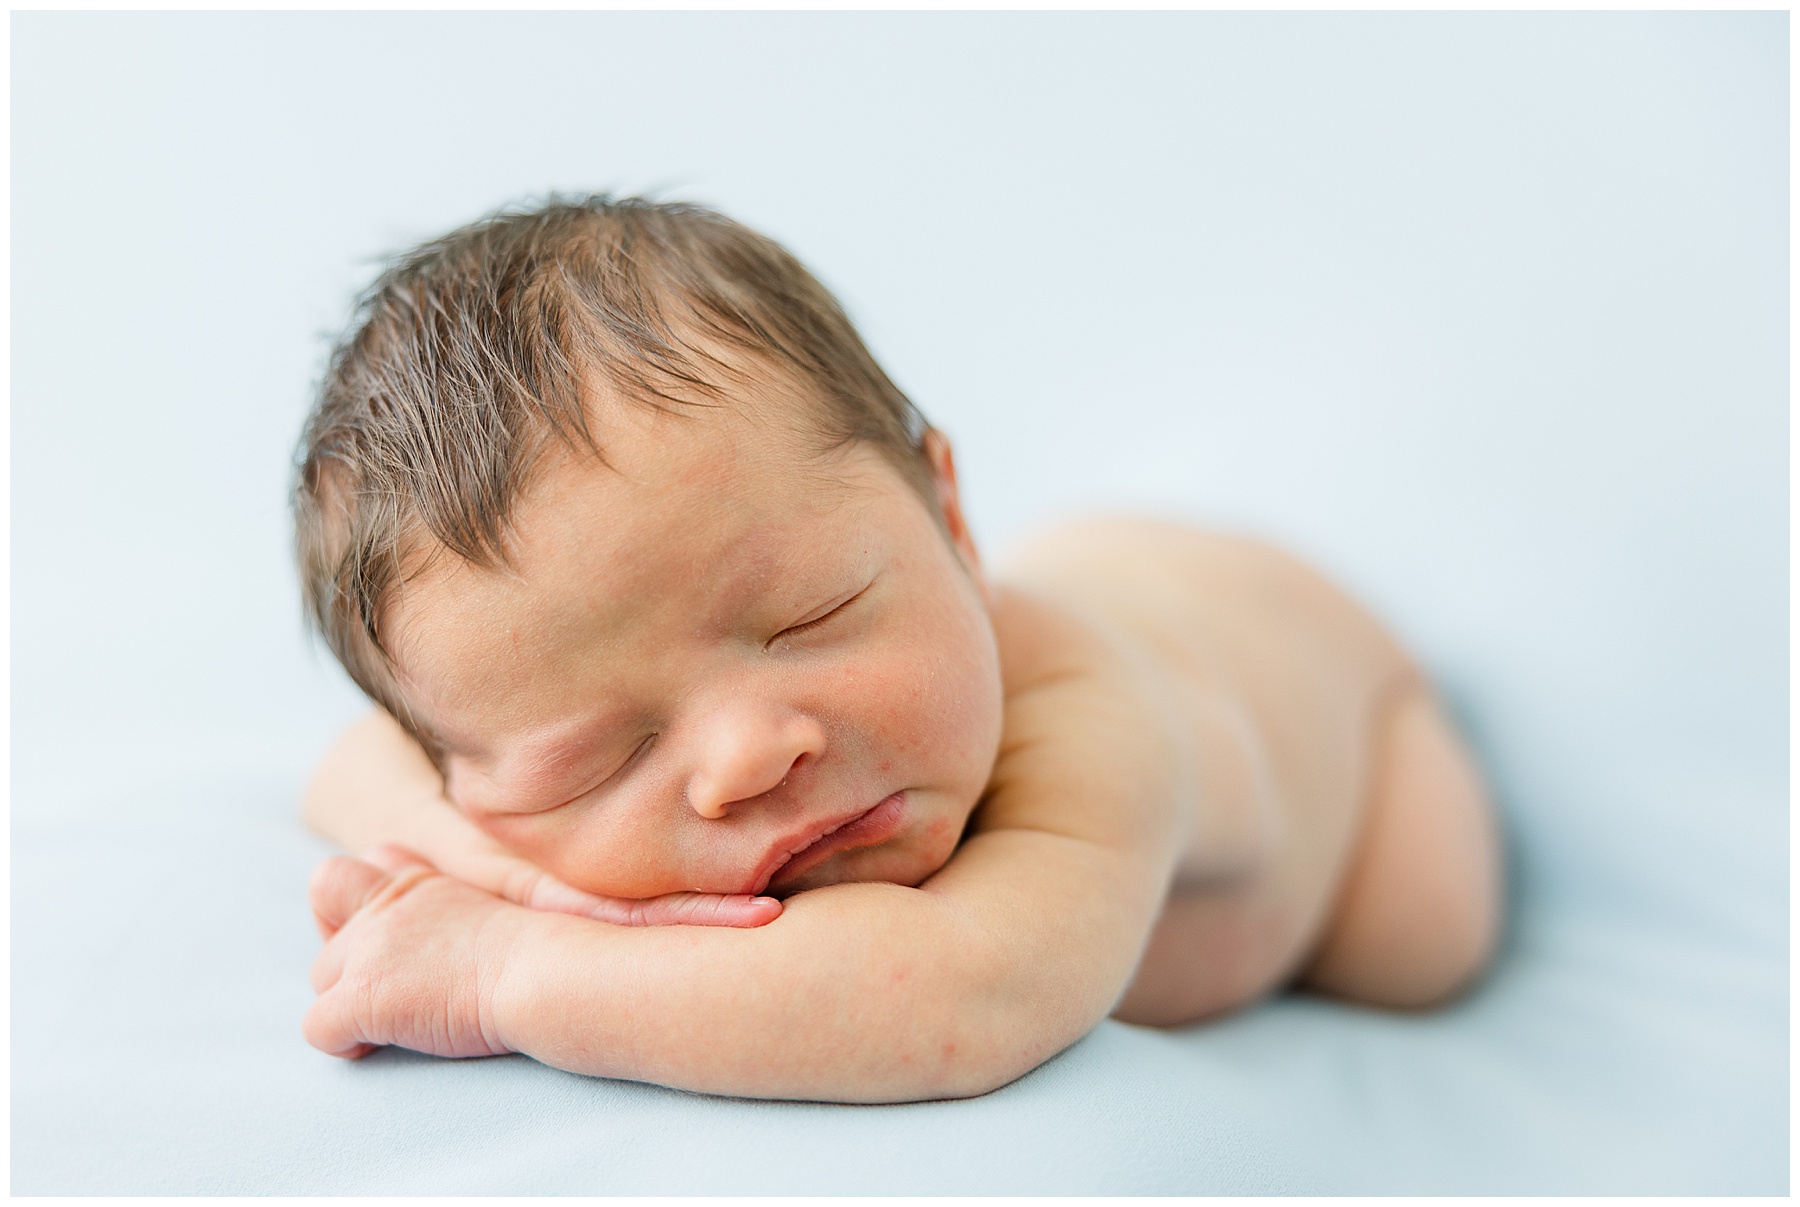 newborn baby asleep on blue background